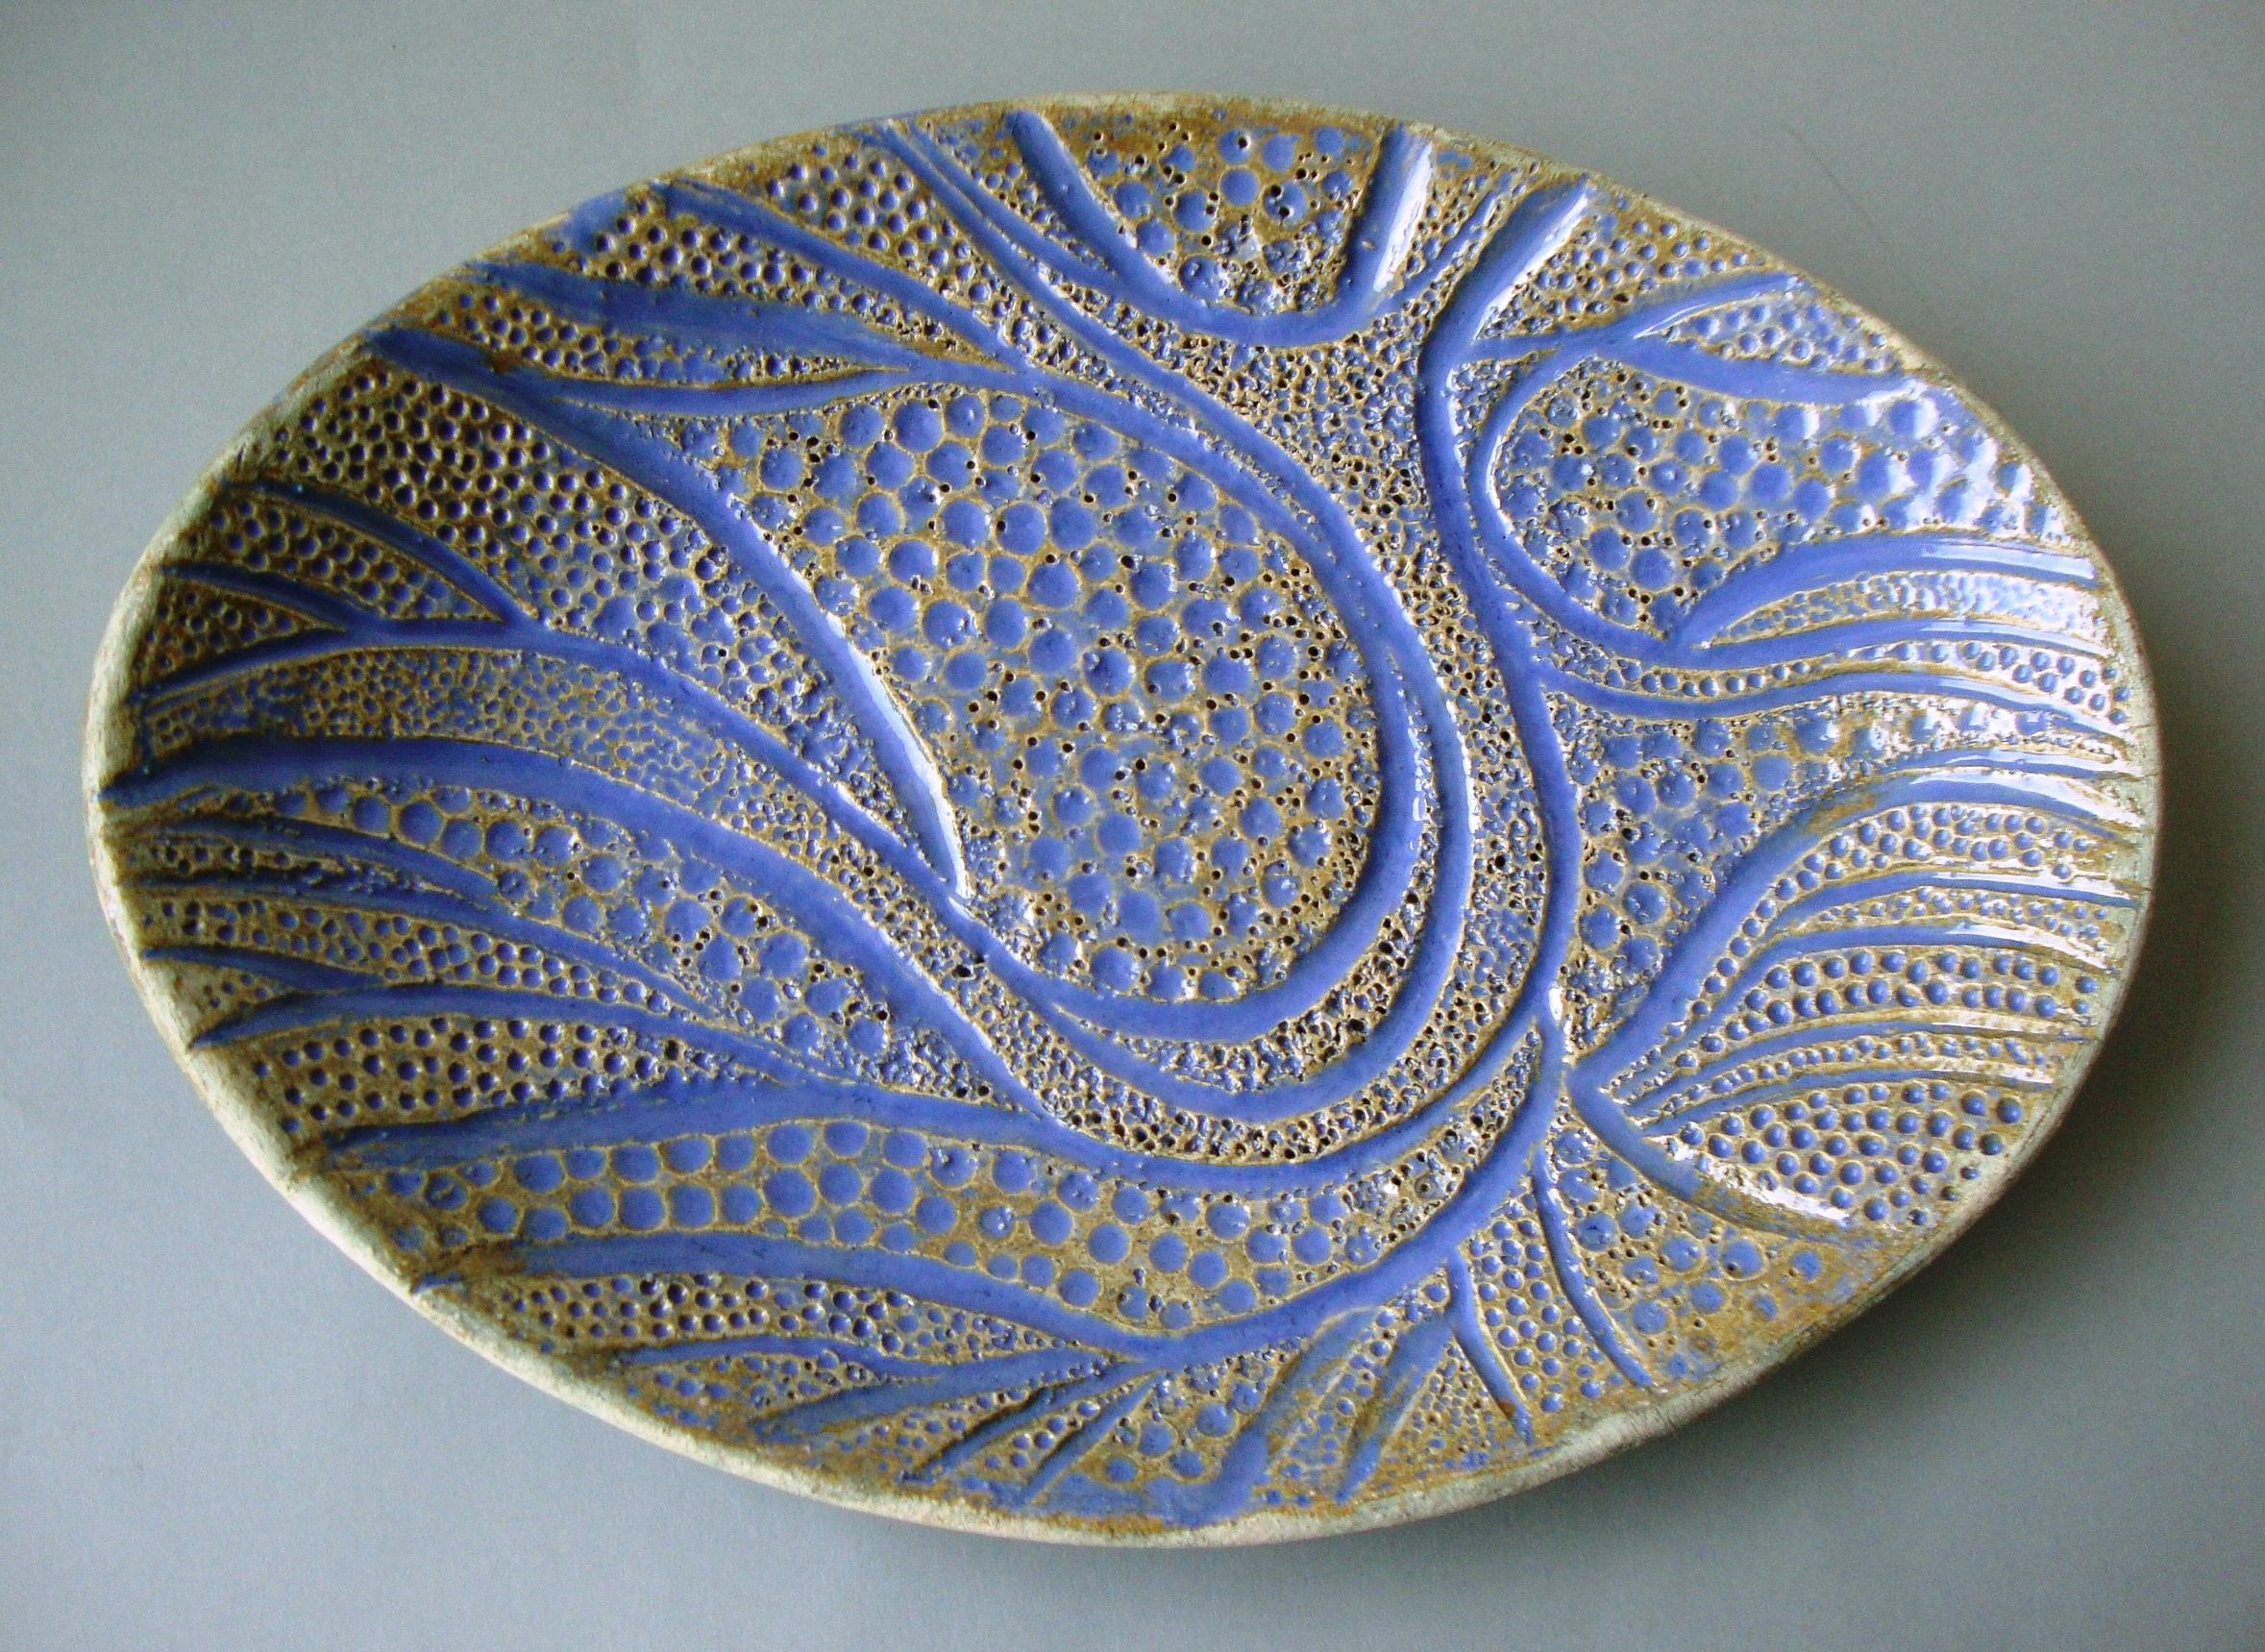 Ovale Schale mit Baummotiv. 2013, Steingut, 3,5x26x18,5 cm